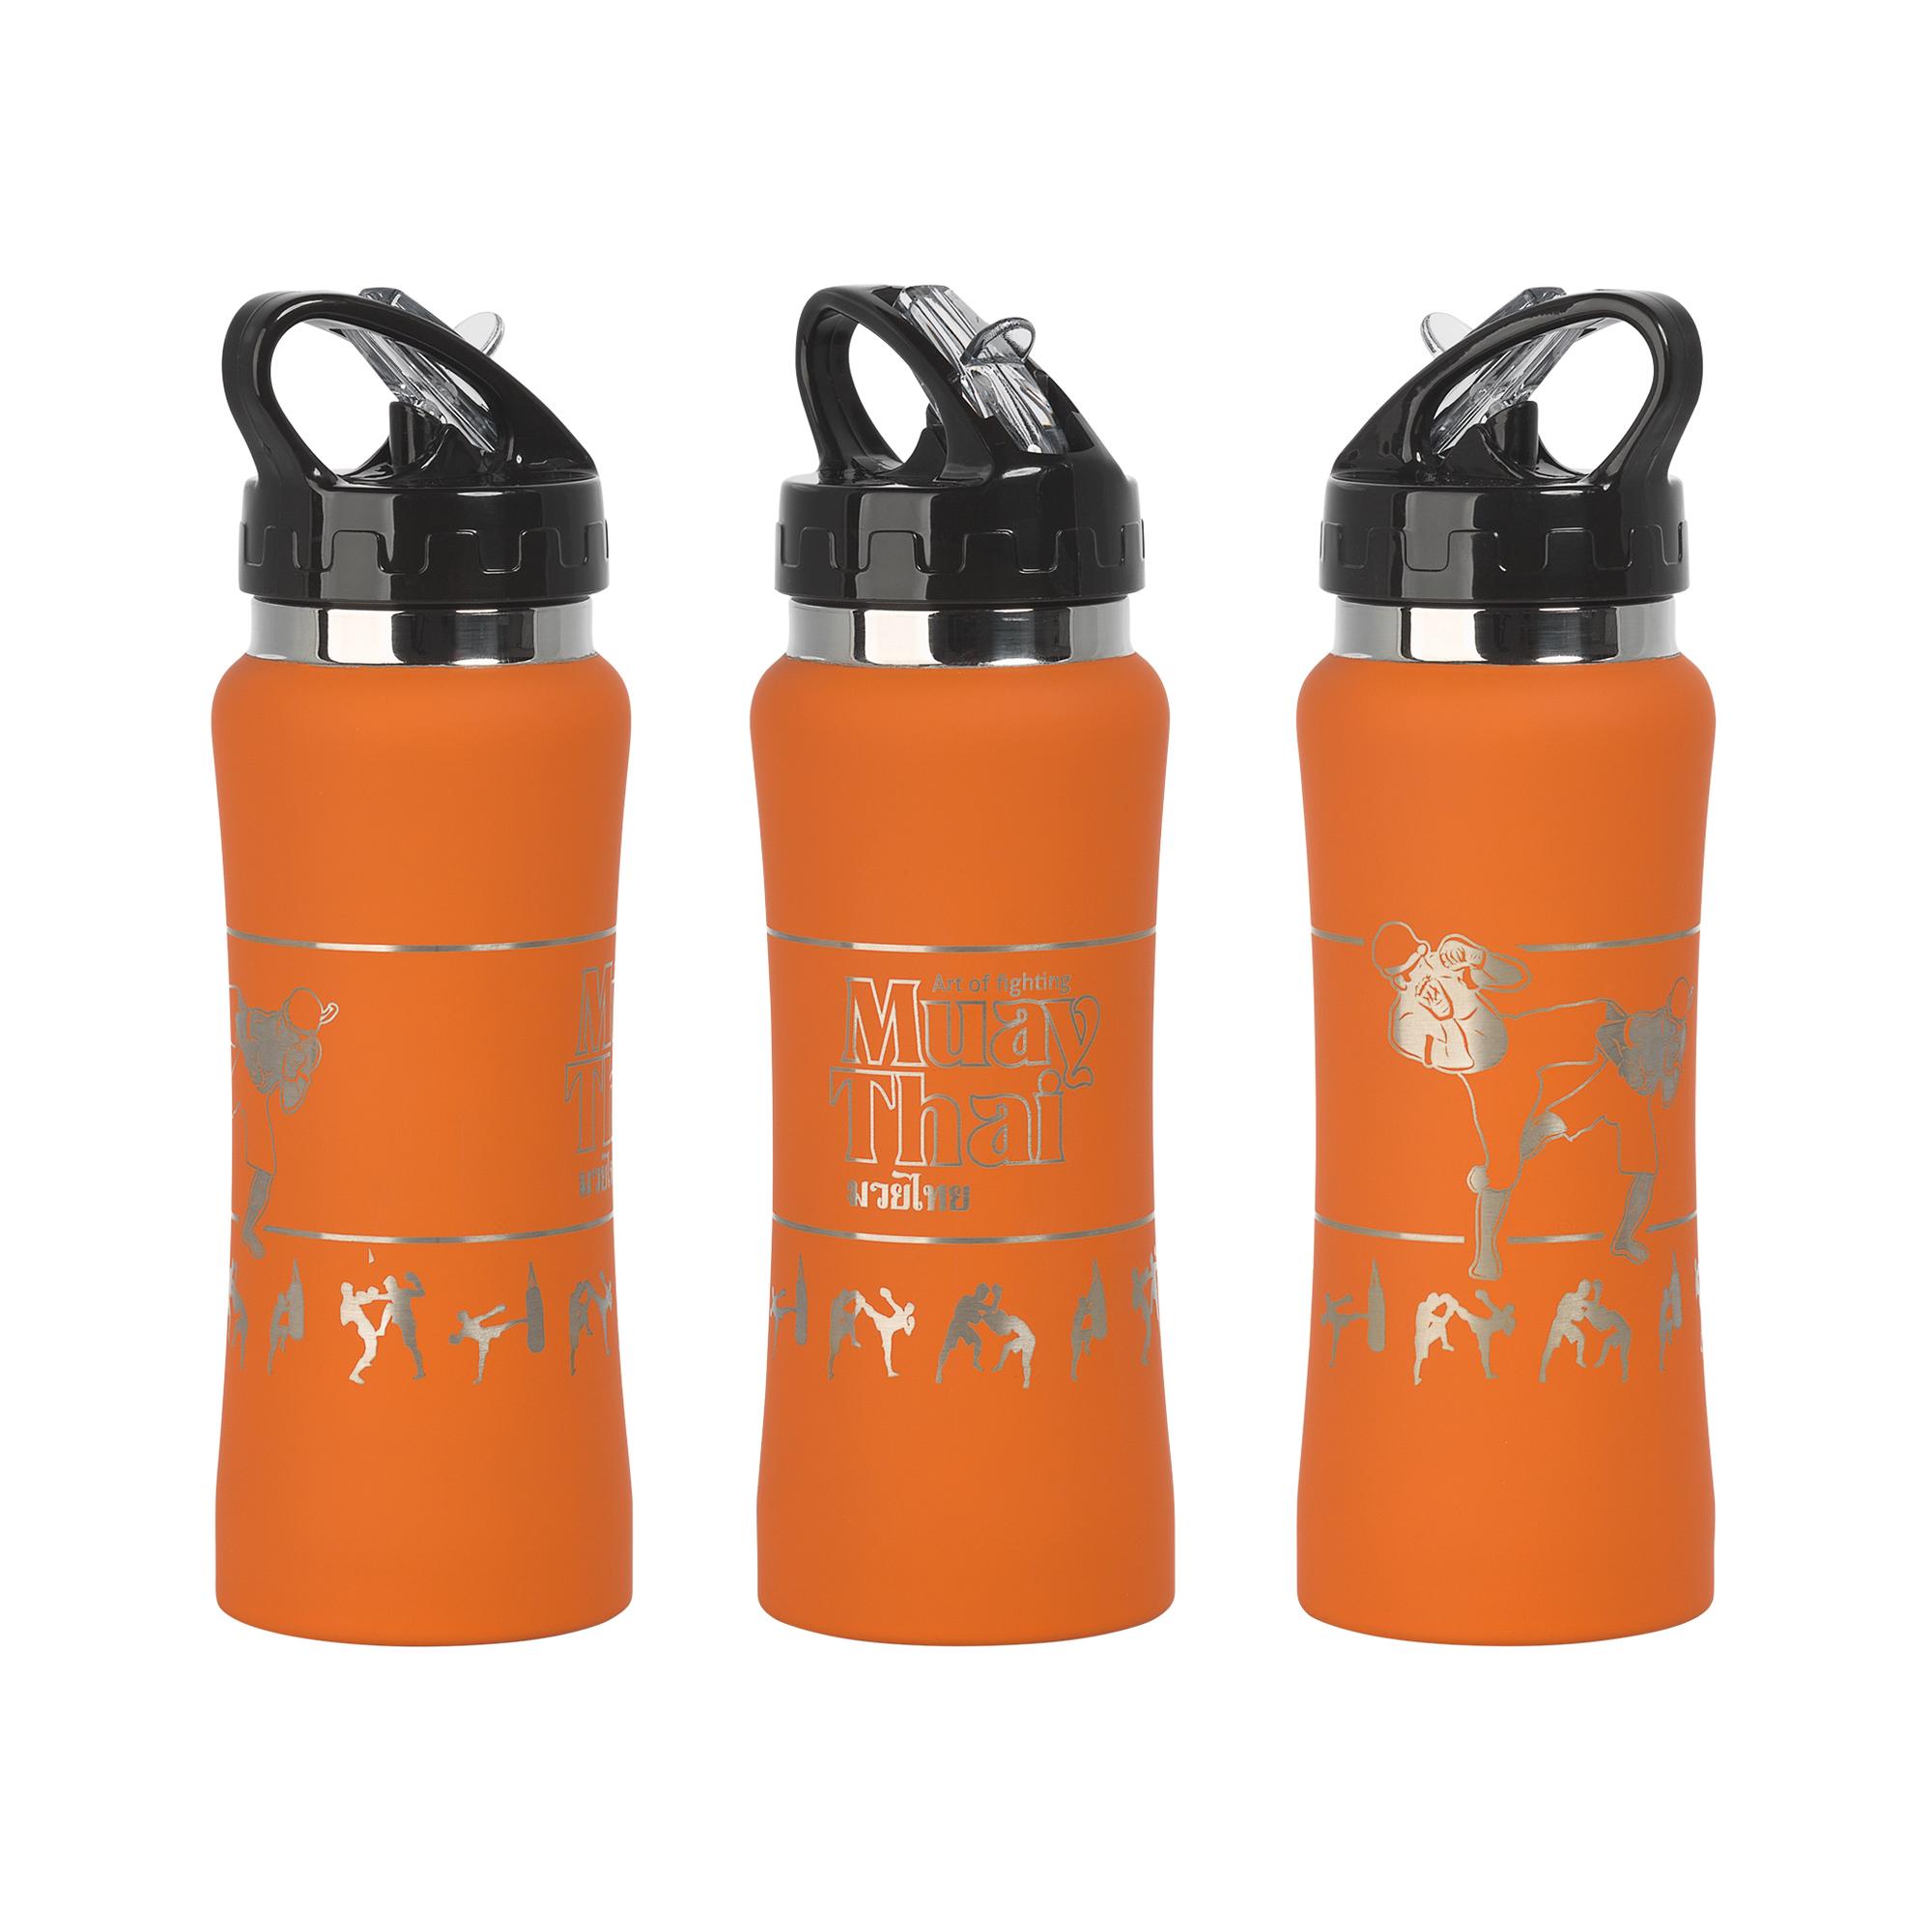 Бутылка для воды "Индиана" с гравировкой по окружности "Лето", цвет оранжевый, фото 1